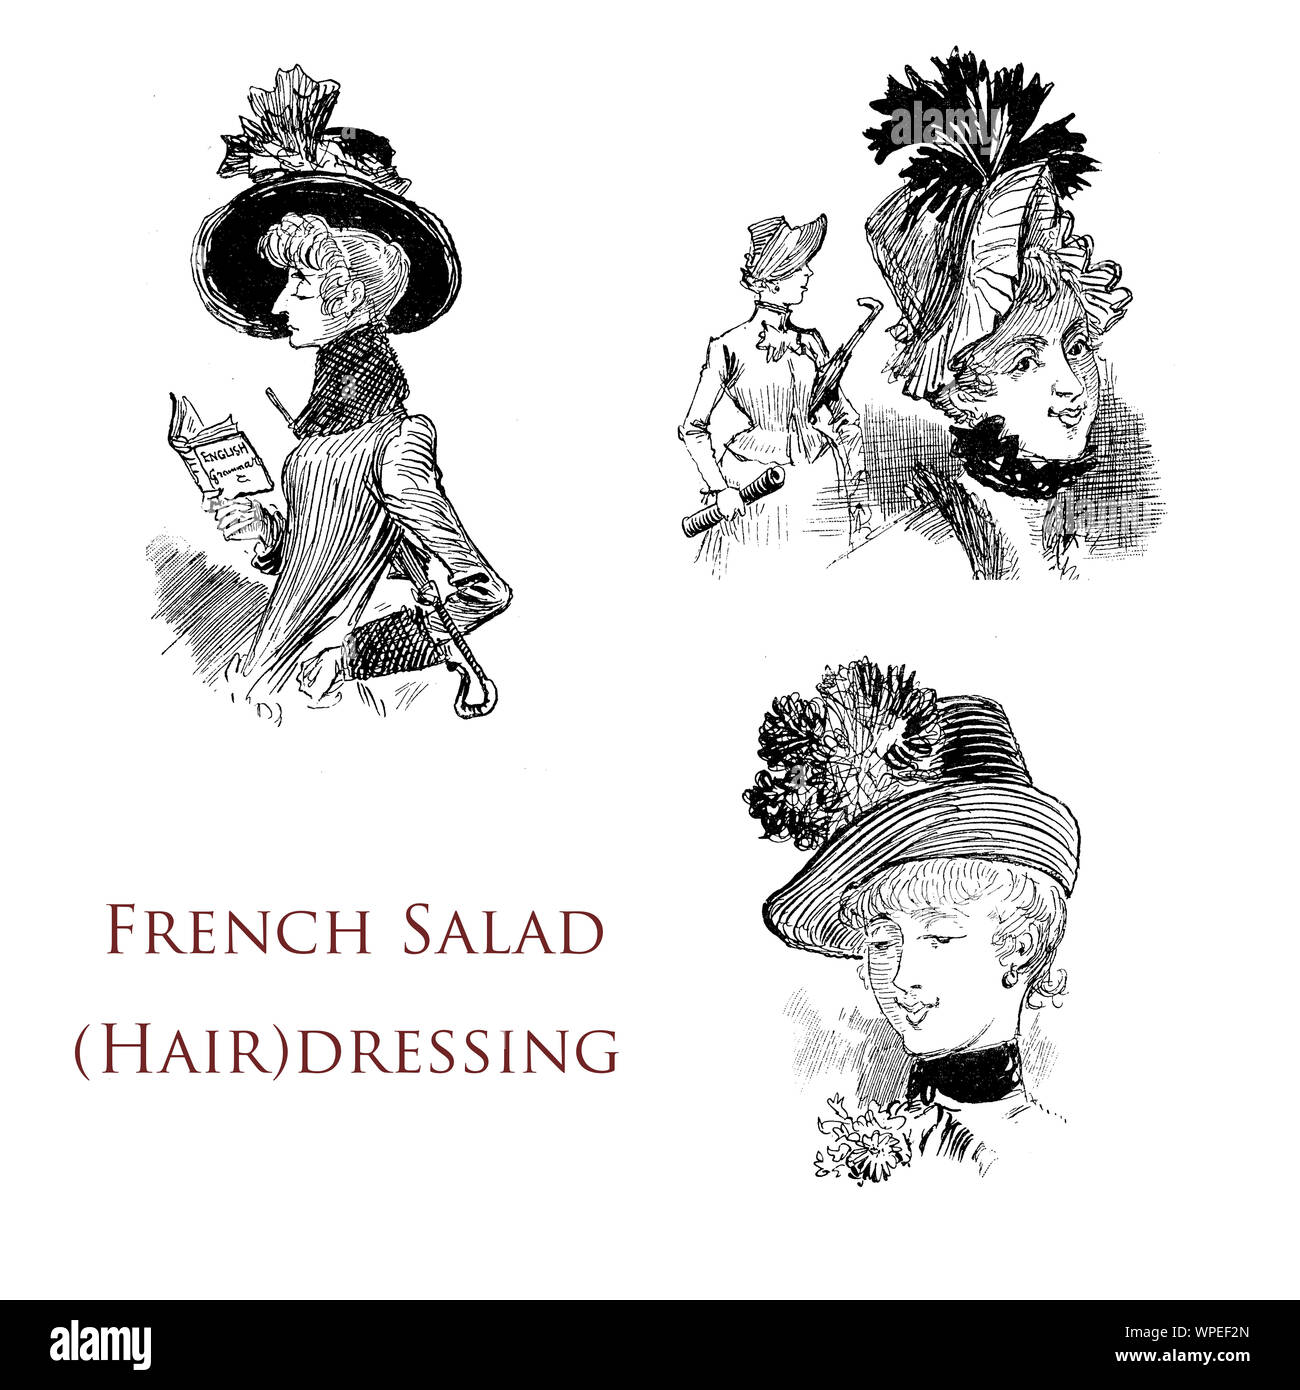 L'humour et caricatures - salade française : coiffure chapeaux à la mode, mesdames avec légumes décorations sur leurs têtes Banque D'Images